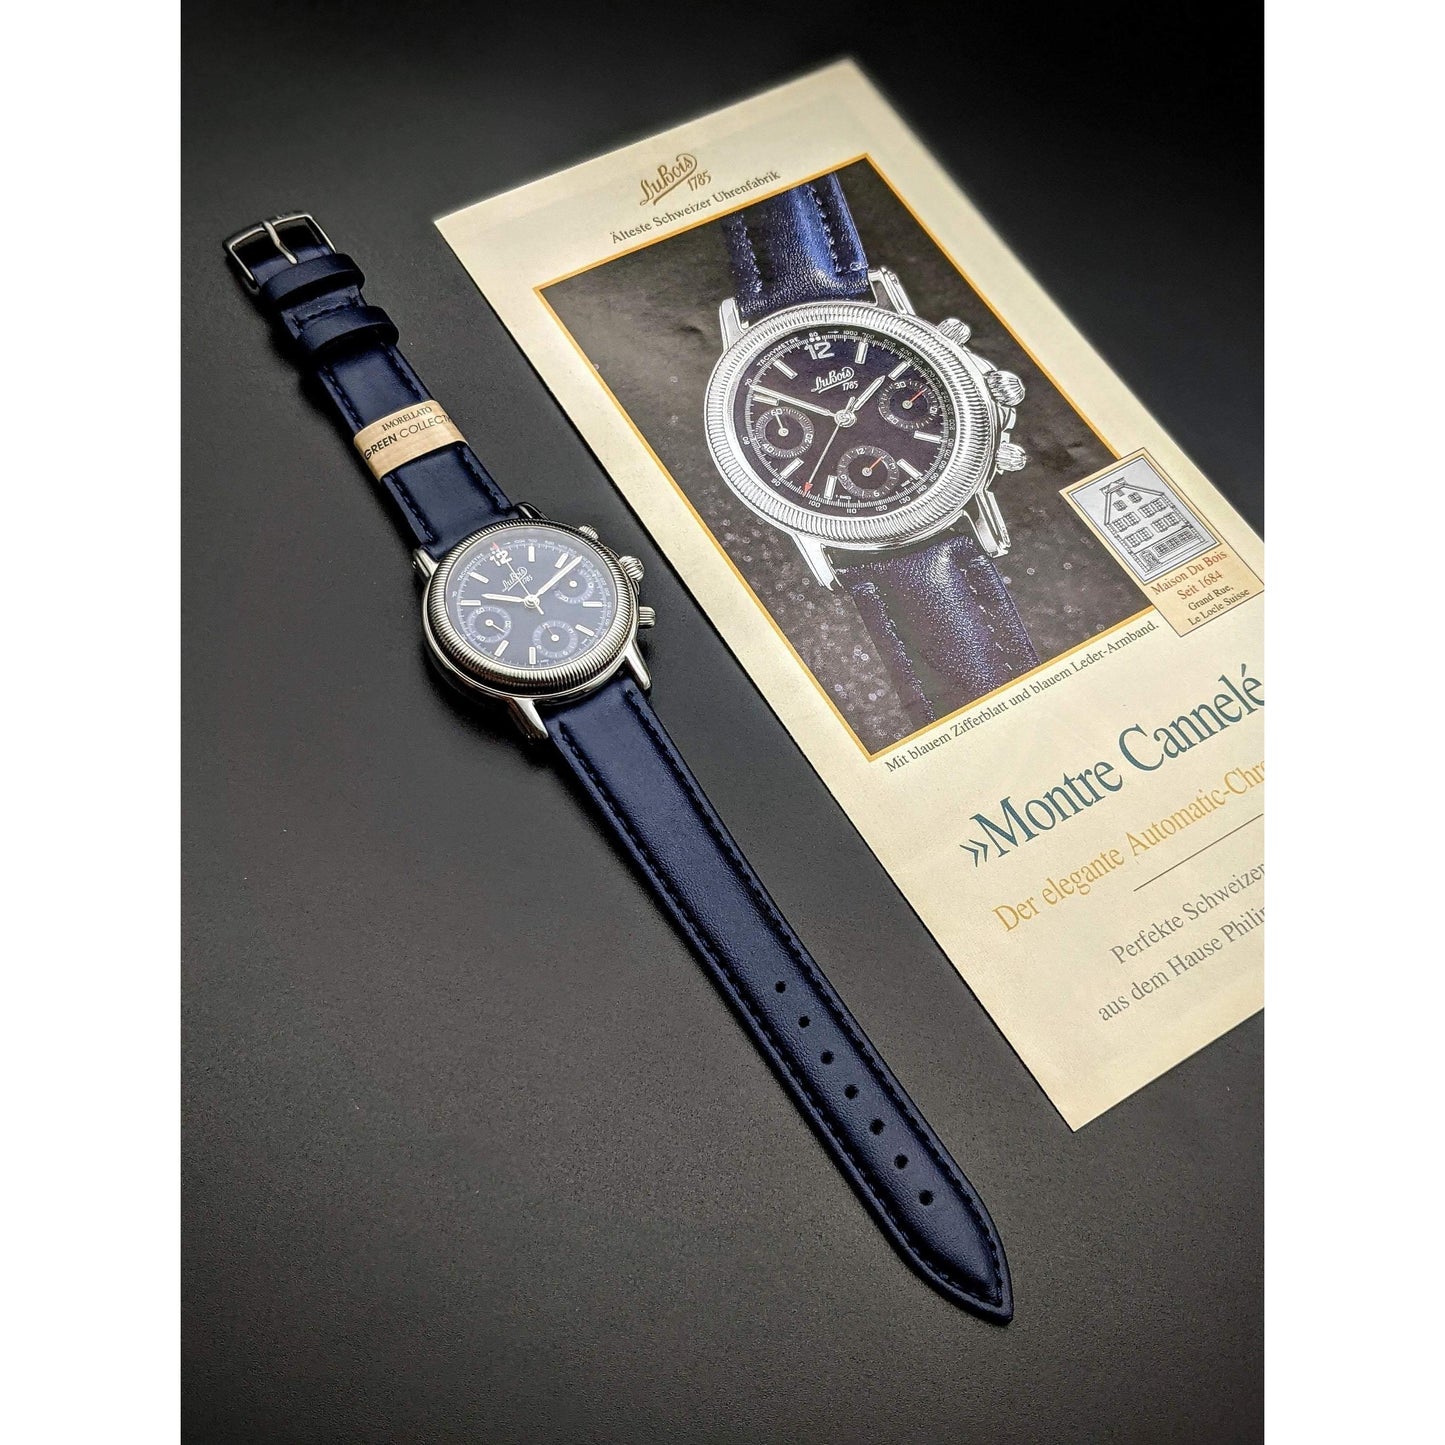 DuBois 1785 Montre Cannele Sport Automatic Chronograph Watch